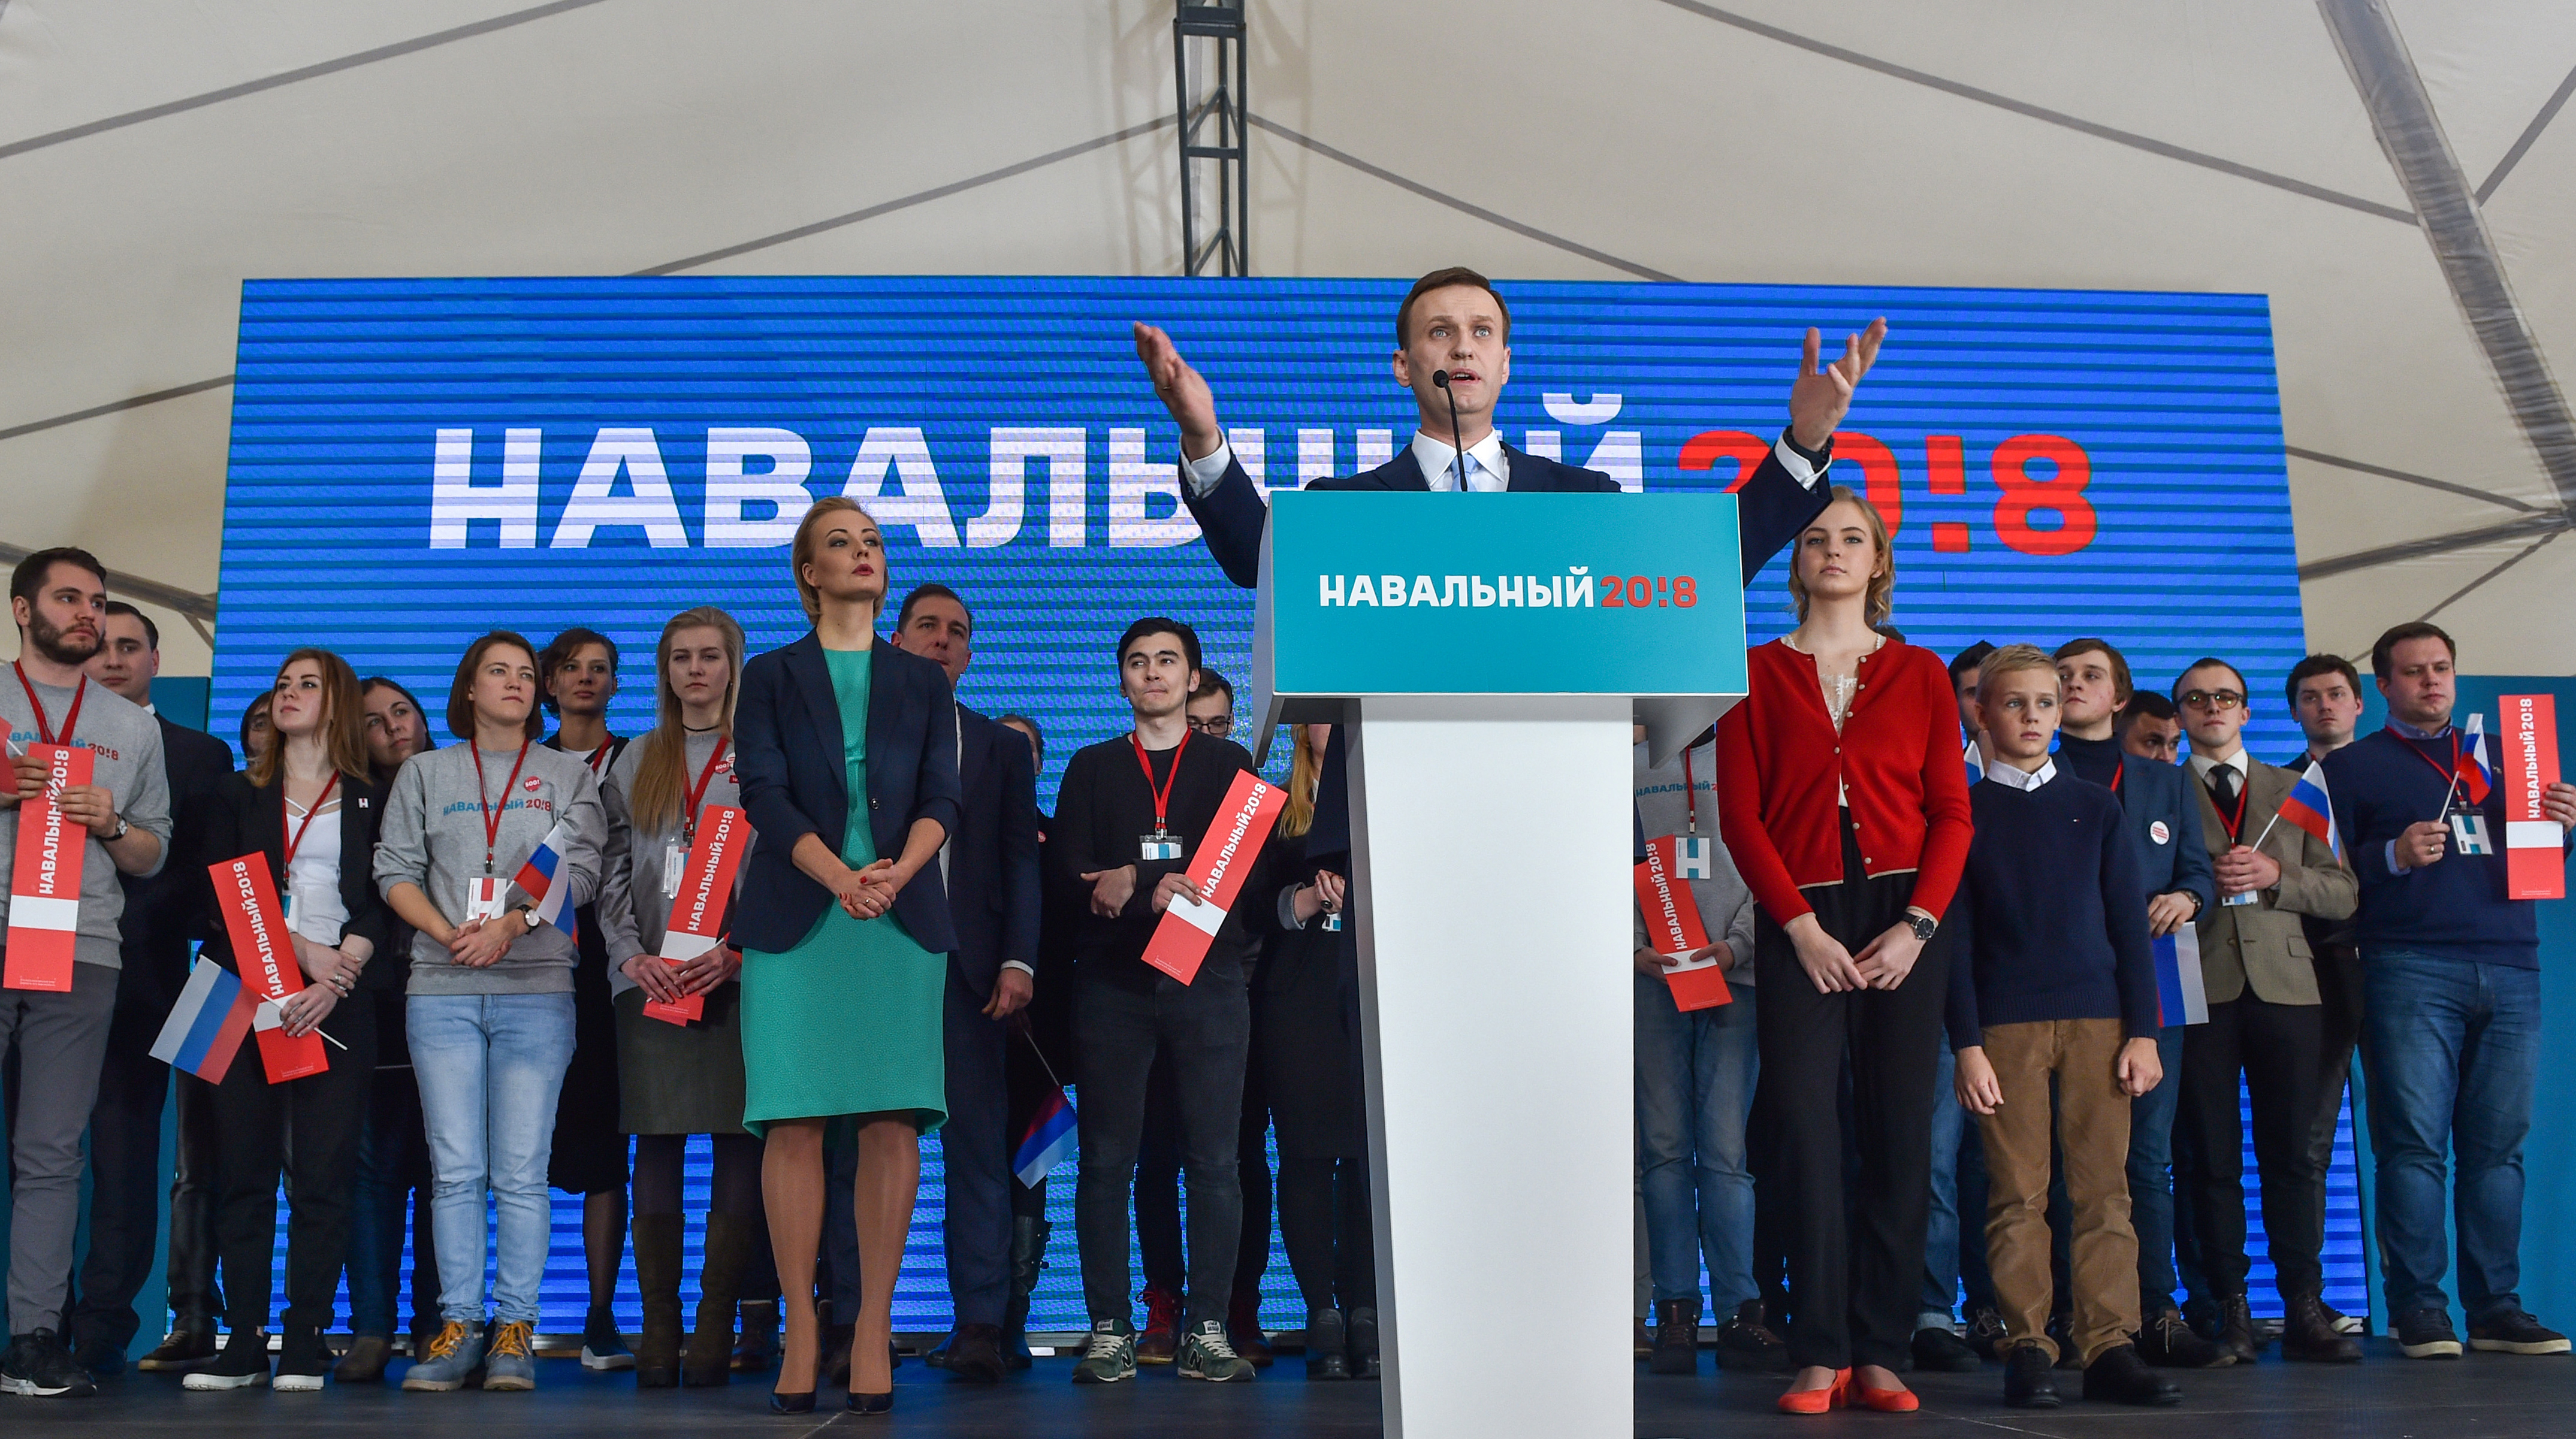 Navalnij összegyűjtötte az aláírásokat ahhoz, hogy tavasszal elindulhasson Putyin ellen